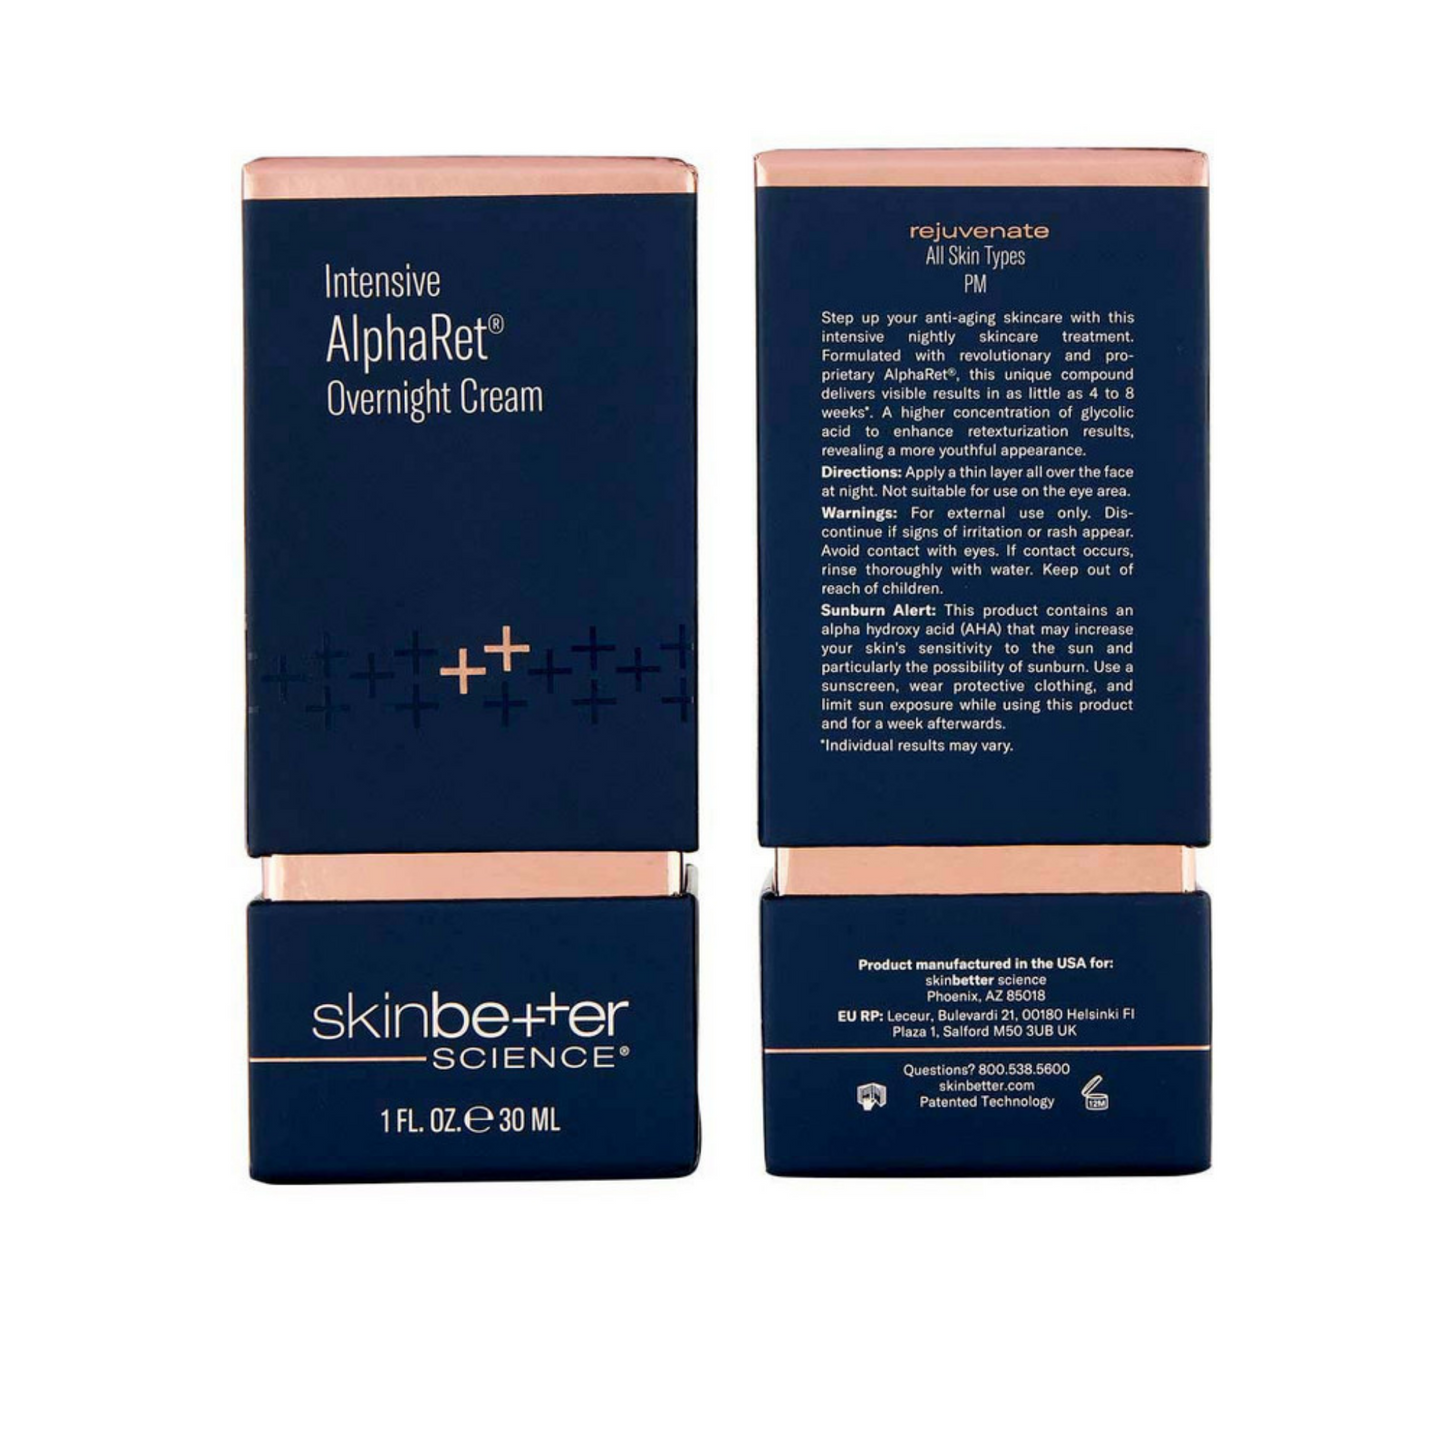 skinbetter science® Intensive AlphaRet Overnight Cream